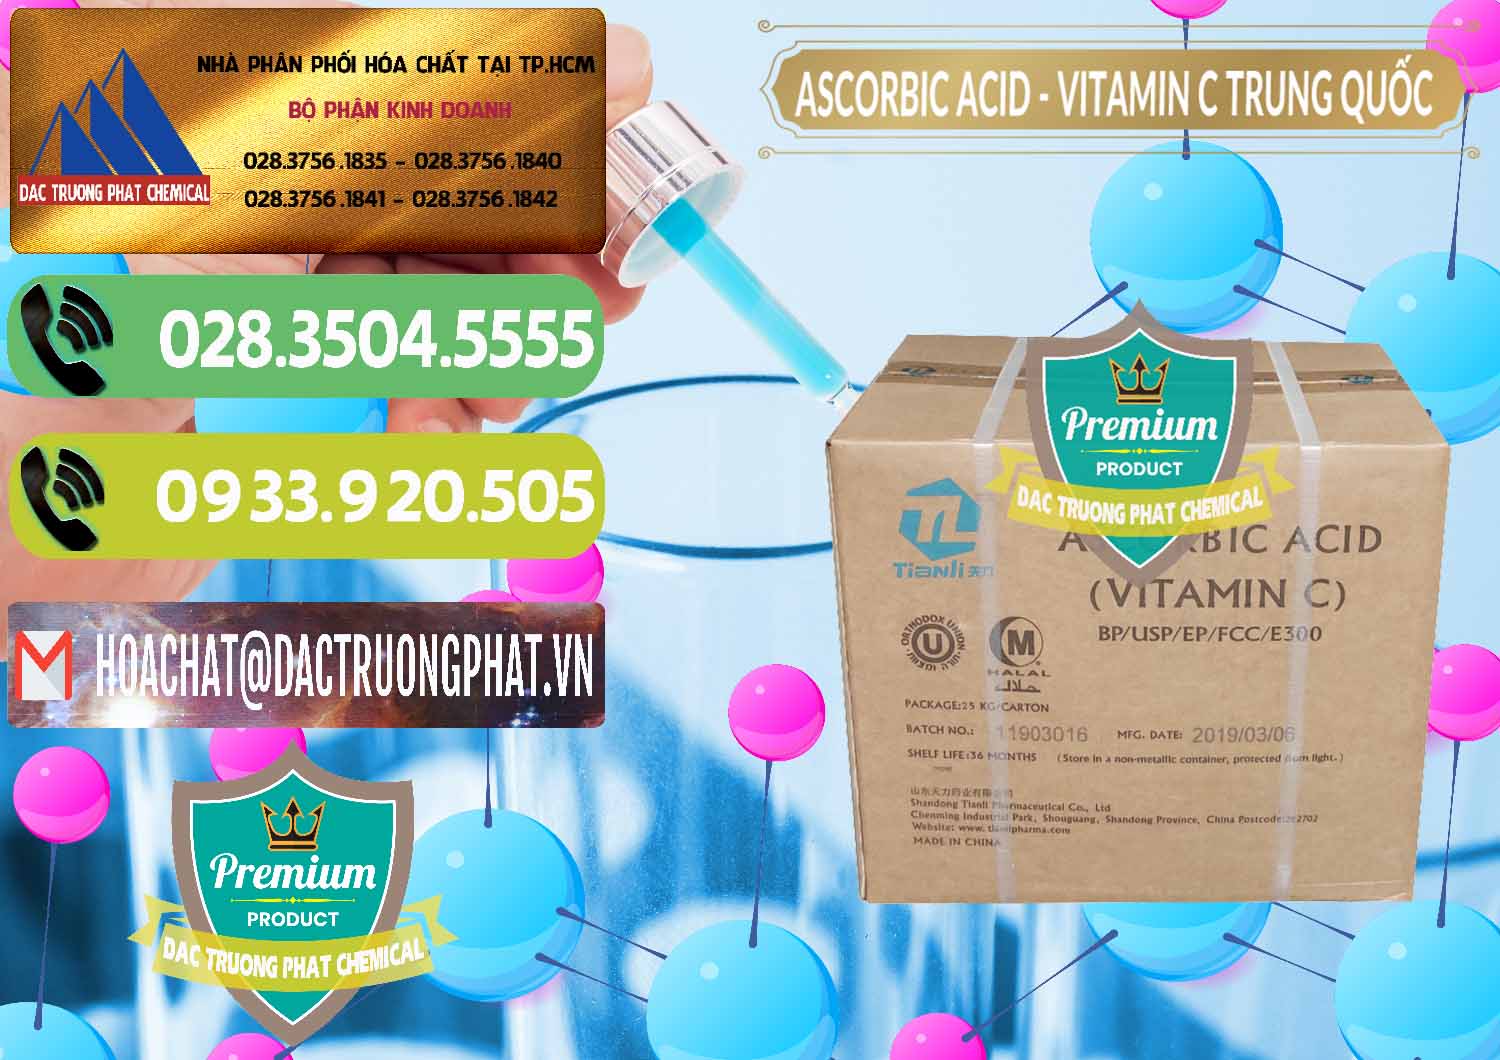 Nơi chuyên bán ( cung cấp ) Axit Ascorbic - Vitamin C Trung Quốc China - 0309 - Cty phân phối và cung ứng hóa chất tại TP.HCM - hoachatmientay.vn